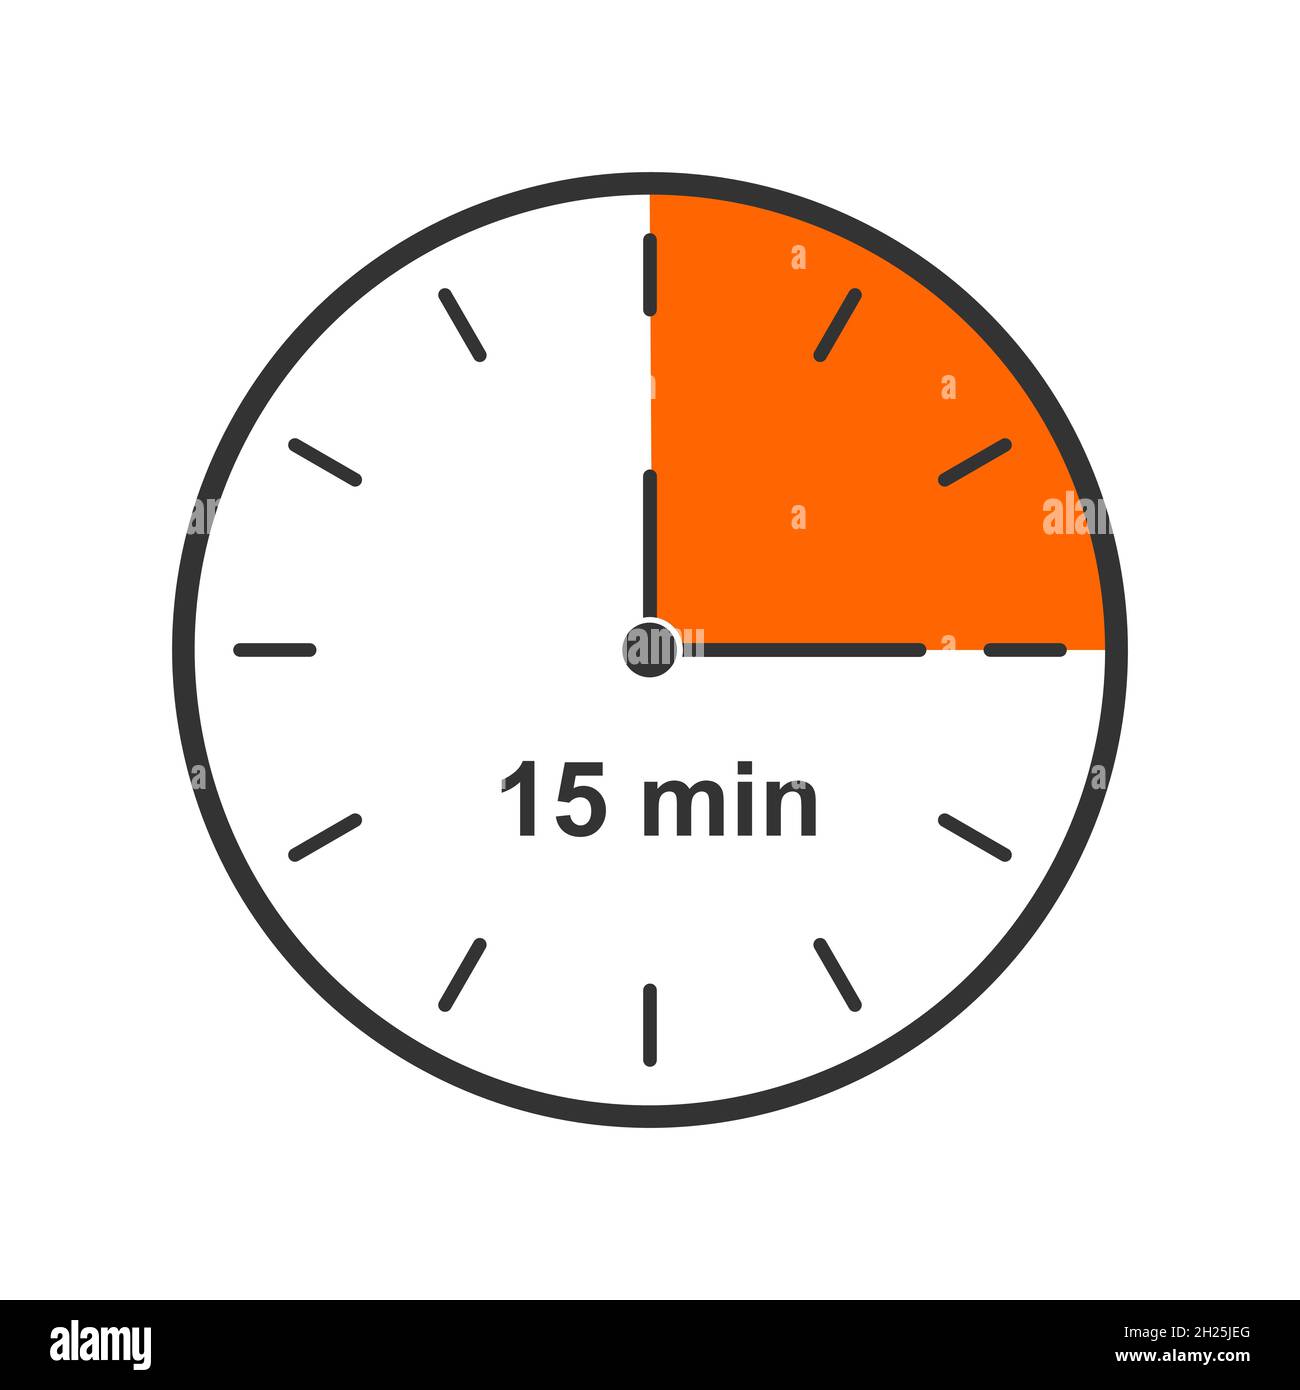 Uhrsymbol mit einem Zeitintervall von 15 Minuten. Eine Viertelstunde.  Countdown-Timer oder Stoppuhrsymbol auf weißem Hintergrund isoliert.  Infografik-Element für Kochen oder Sportspiele. Vektorgrafik flach  Stock-Vektorgrafik - Alamy